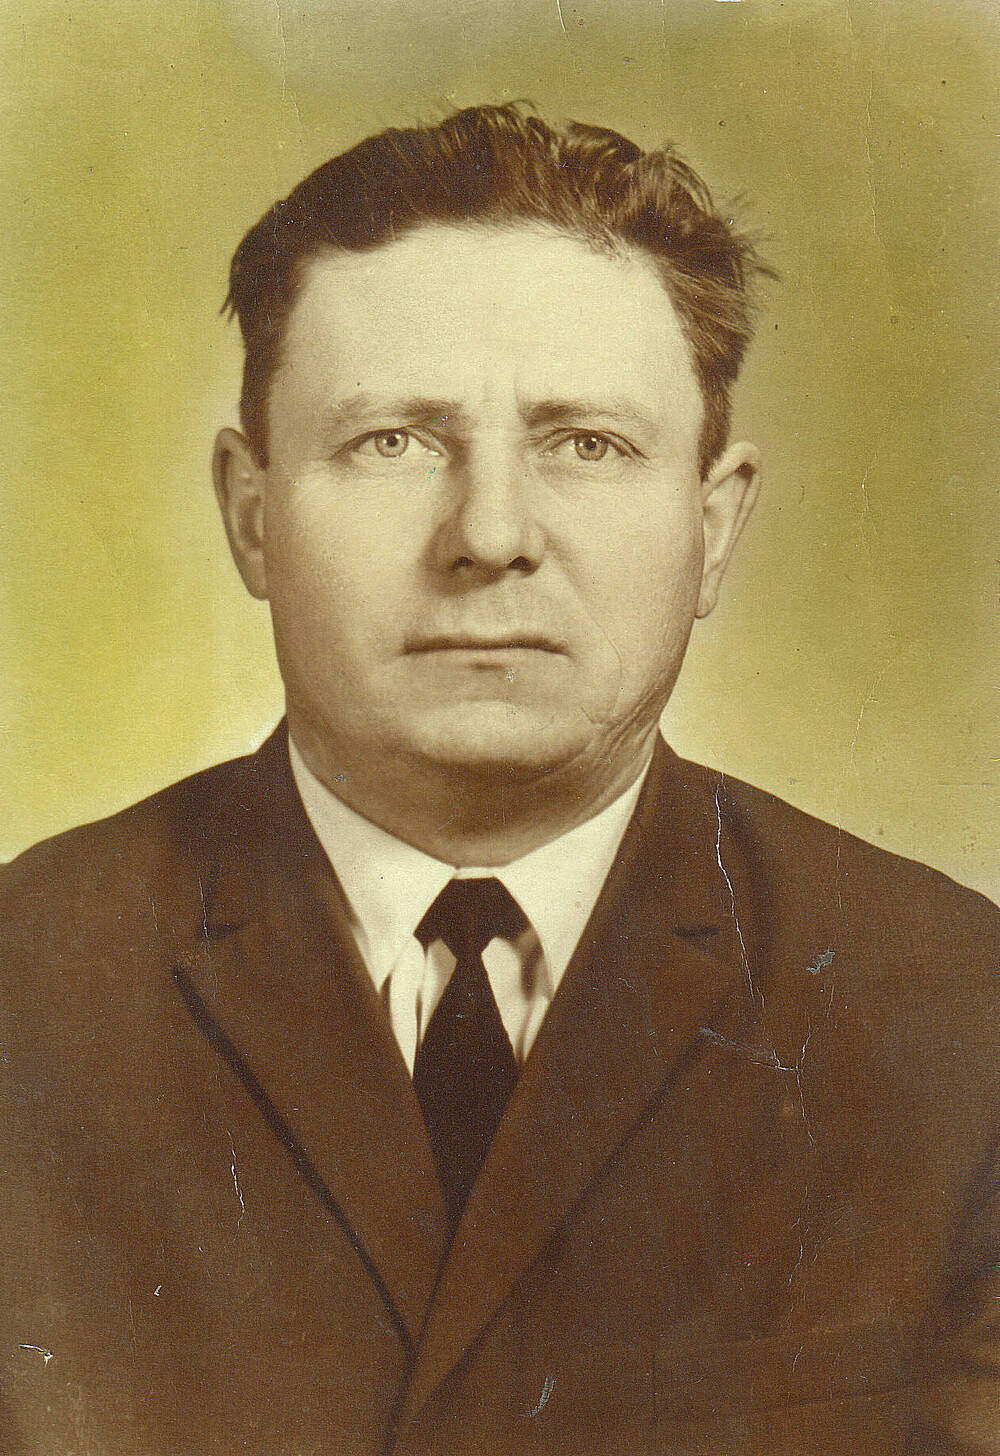 Фотография цветная Ляшкова Михаила Пантелеевича, ветерана Великой Отечественной войны 1941-1945 г. г.